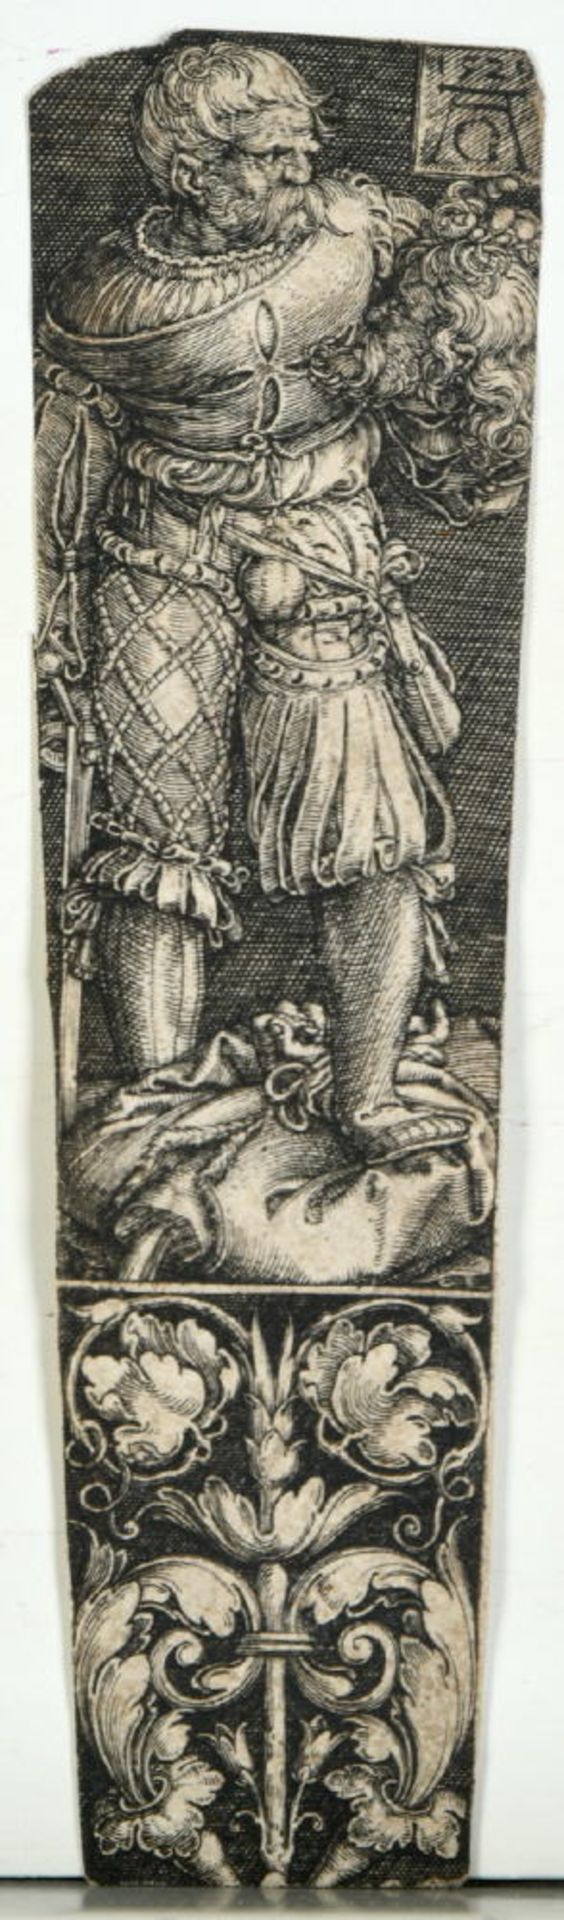 Aldegrever (Trippenmeker), Heinrich, 1502 Paderborn - um 1555/61 SoestKupferstich, ca. 11,5 x 3